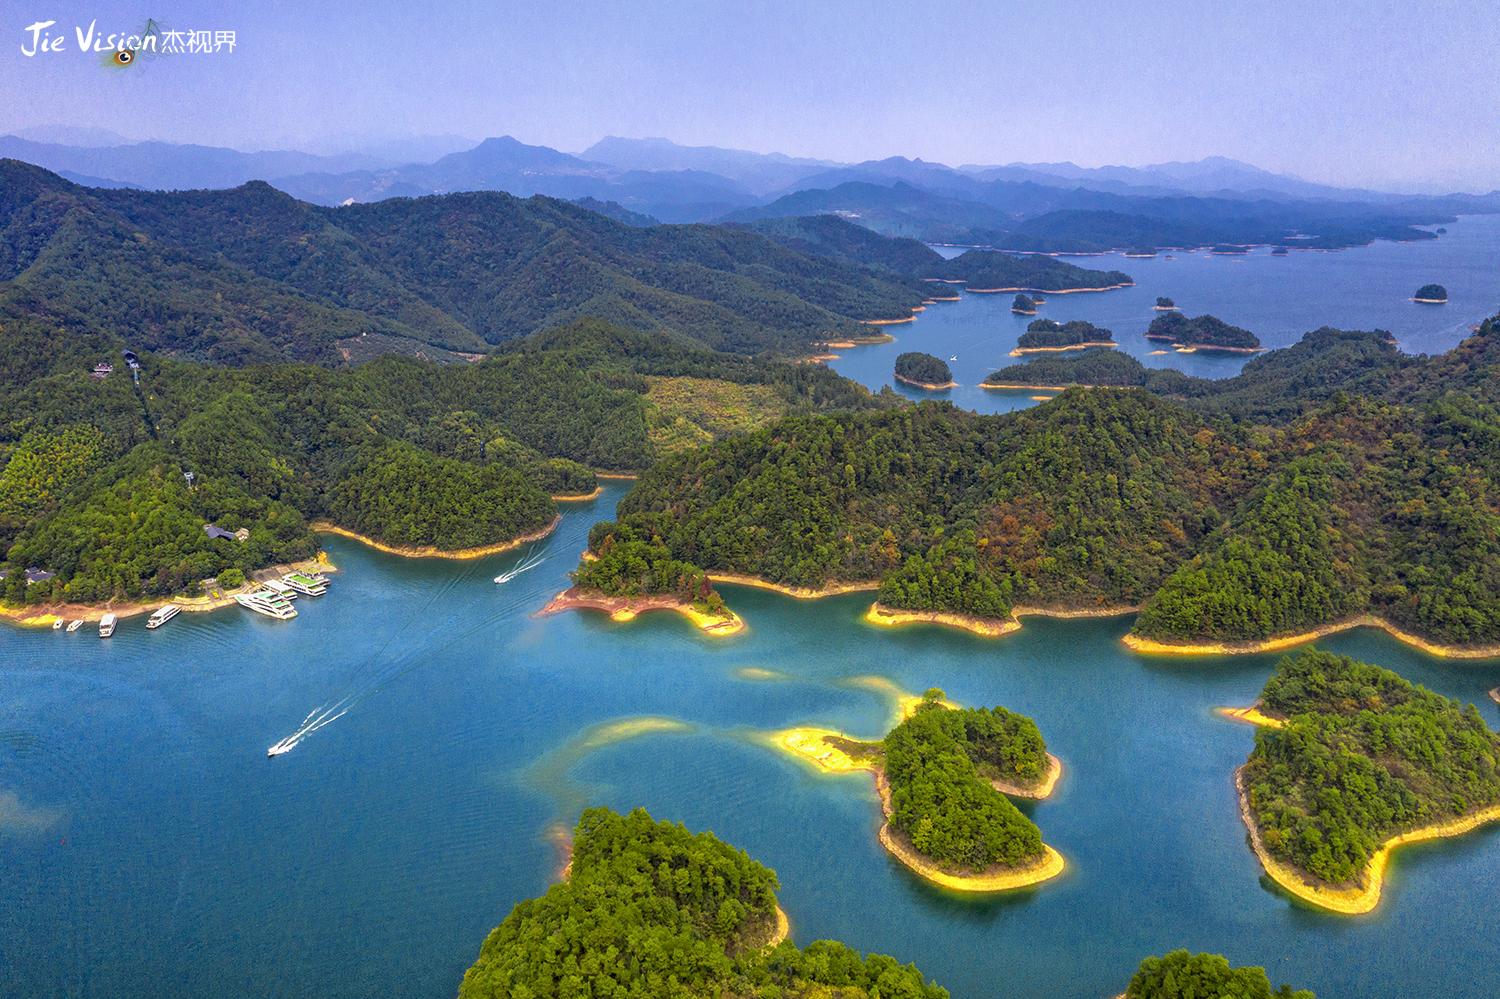 梦里水乡 诗中江南 杭州的后花园千岛湖一个让人魂牵梦绕的地方